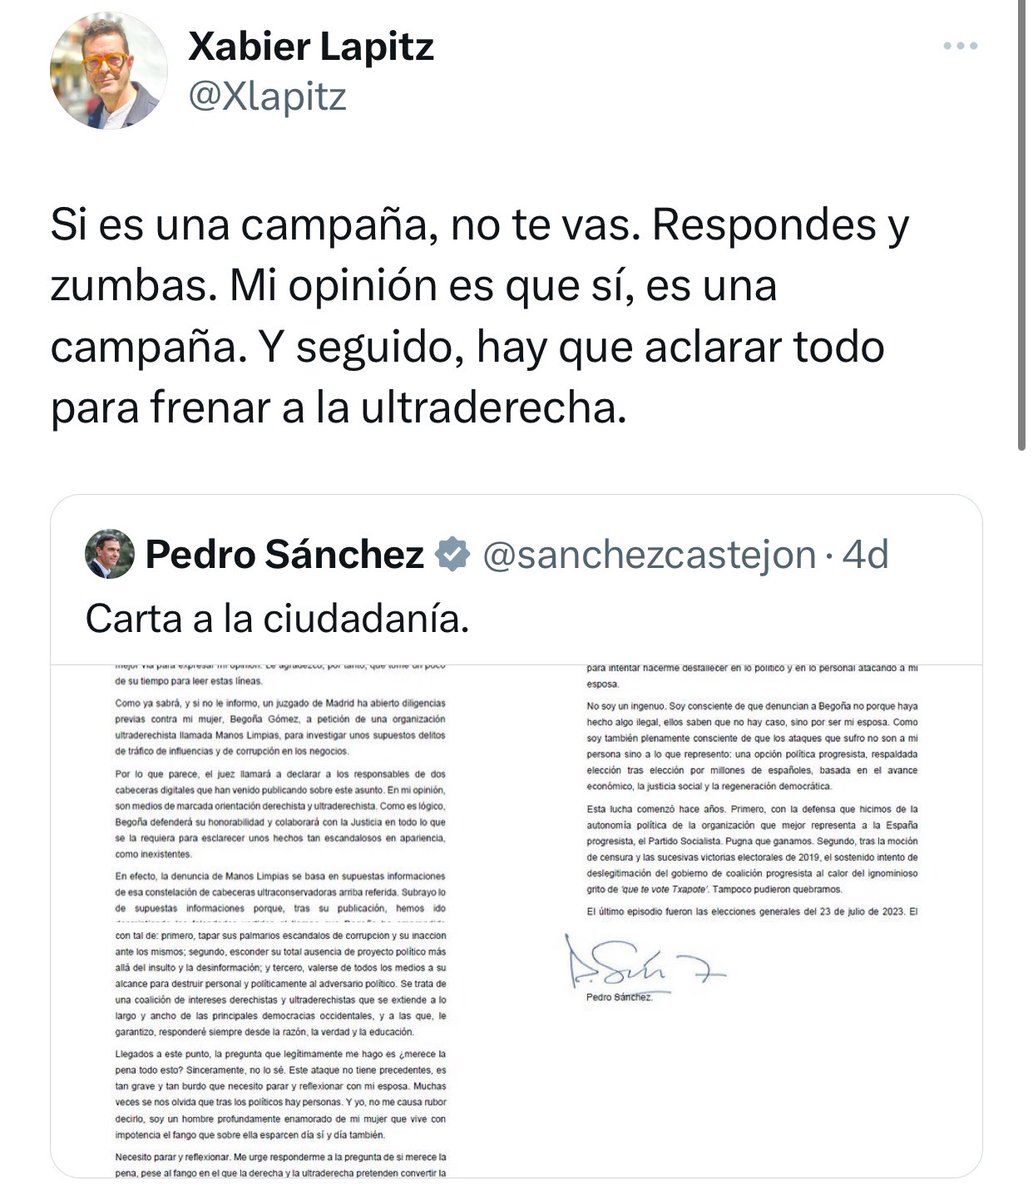 He entendido al Pedro marido, padre, hermano… no he entendido a Pedro Sánchez presidente. Me remito al tuit del otro día.